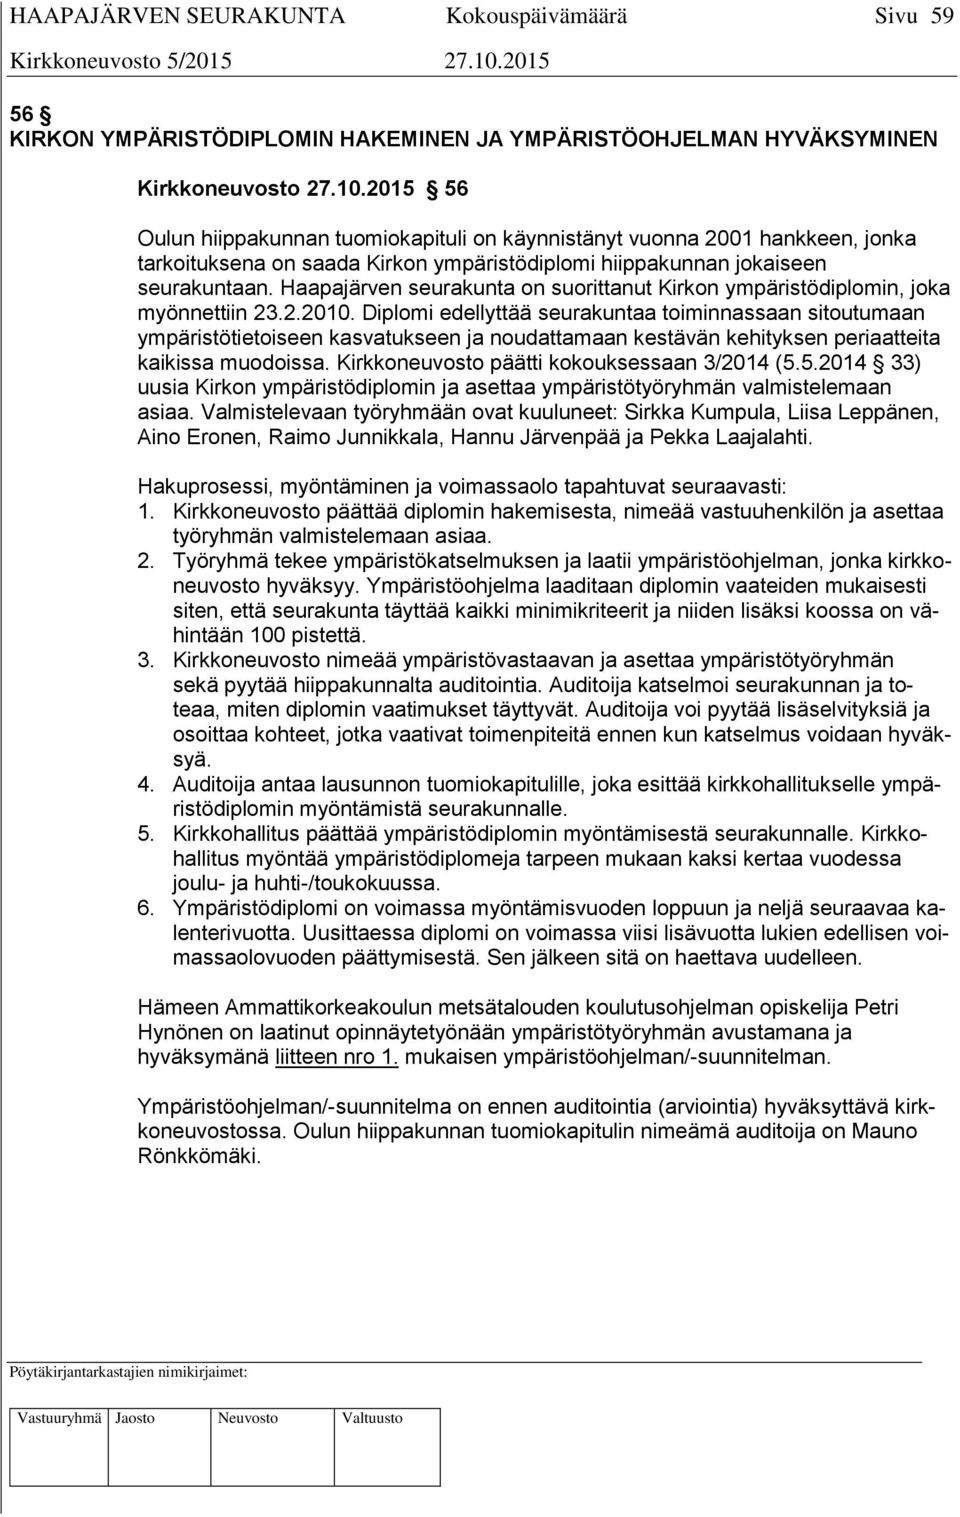 Haapajärven seurakunta on suorittanut Kirkon ympäristödiplomin, joka myönnettiin 23.2.2010.